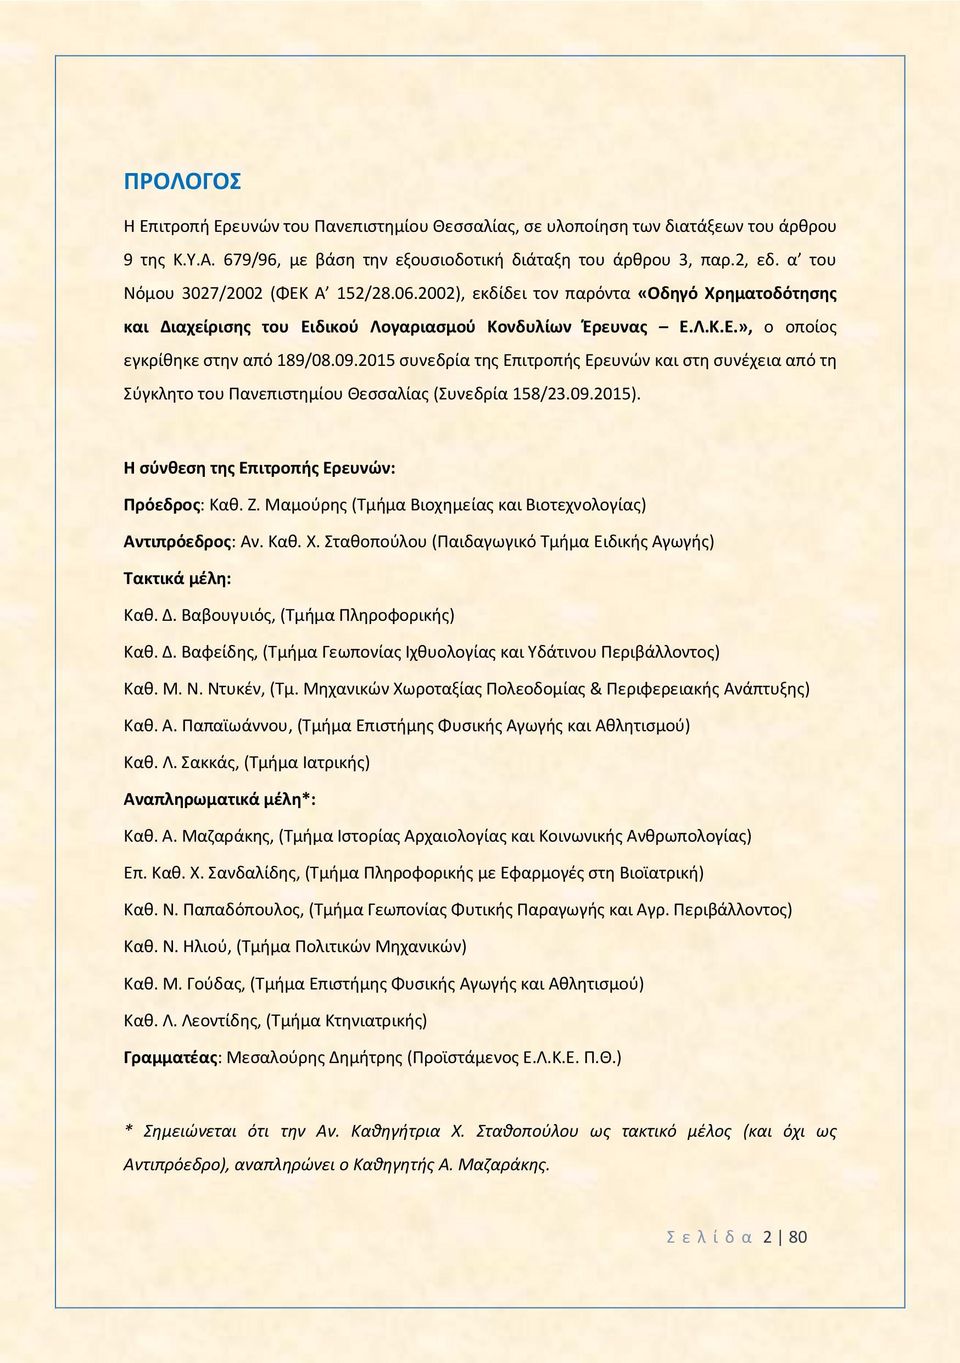 2015 συνεδρία της Επιτροπής Ερευνών και στη συνέχεια από τη Σύγκλητο του Πανεπιστημίου Θεσσαλίας (Συνεδρία 158/23.09.2015). Η σύνθεση της Επιτροπής Ερευνών: Πρόεδρος: Καθ. Ζ.